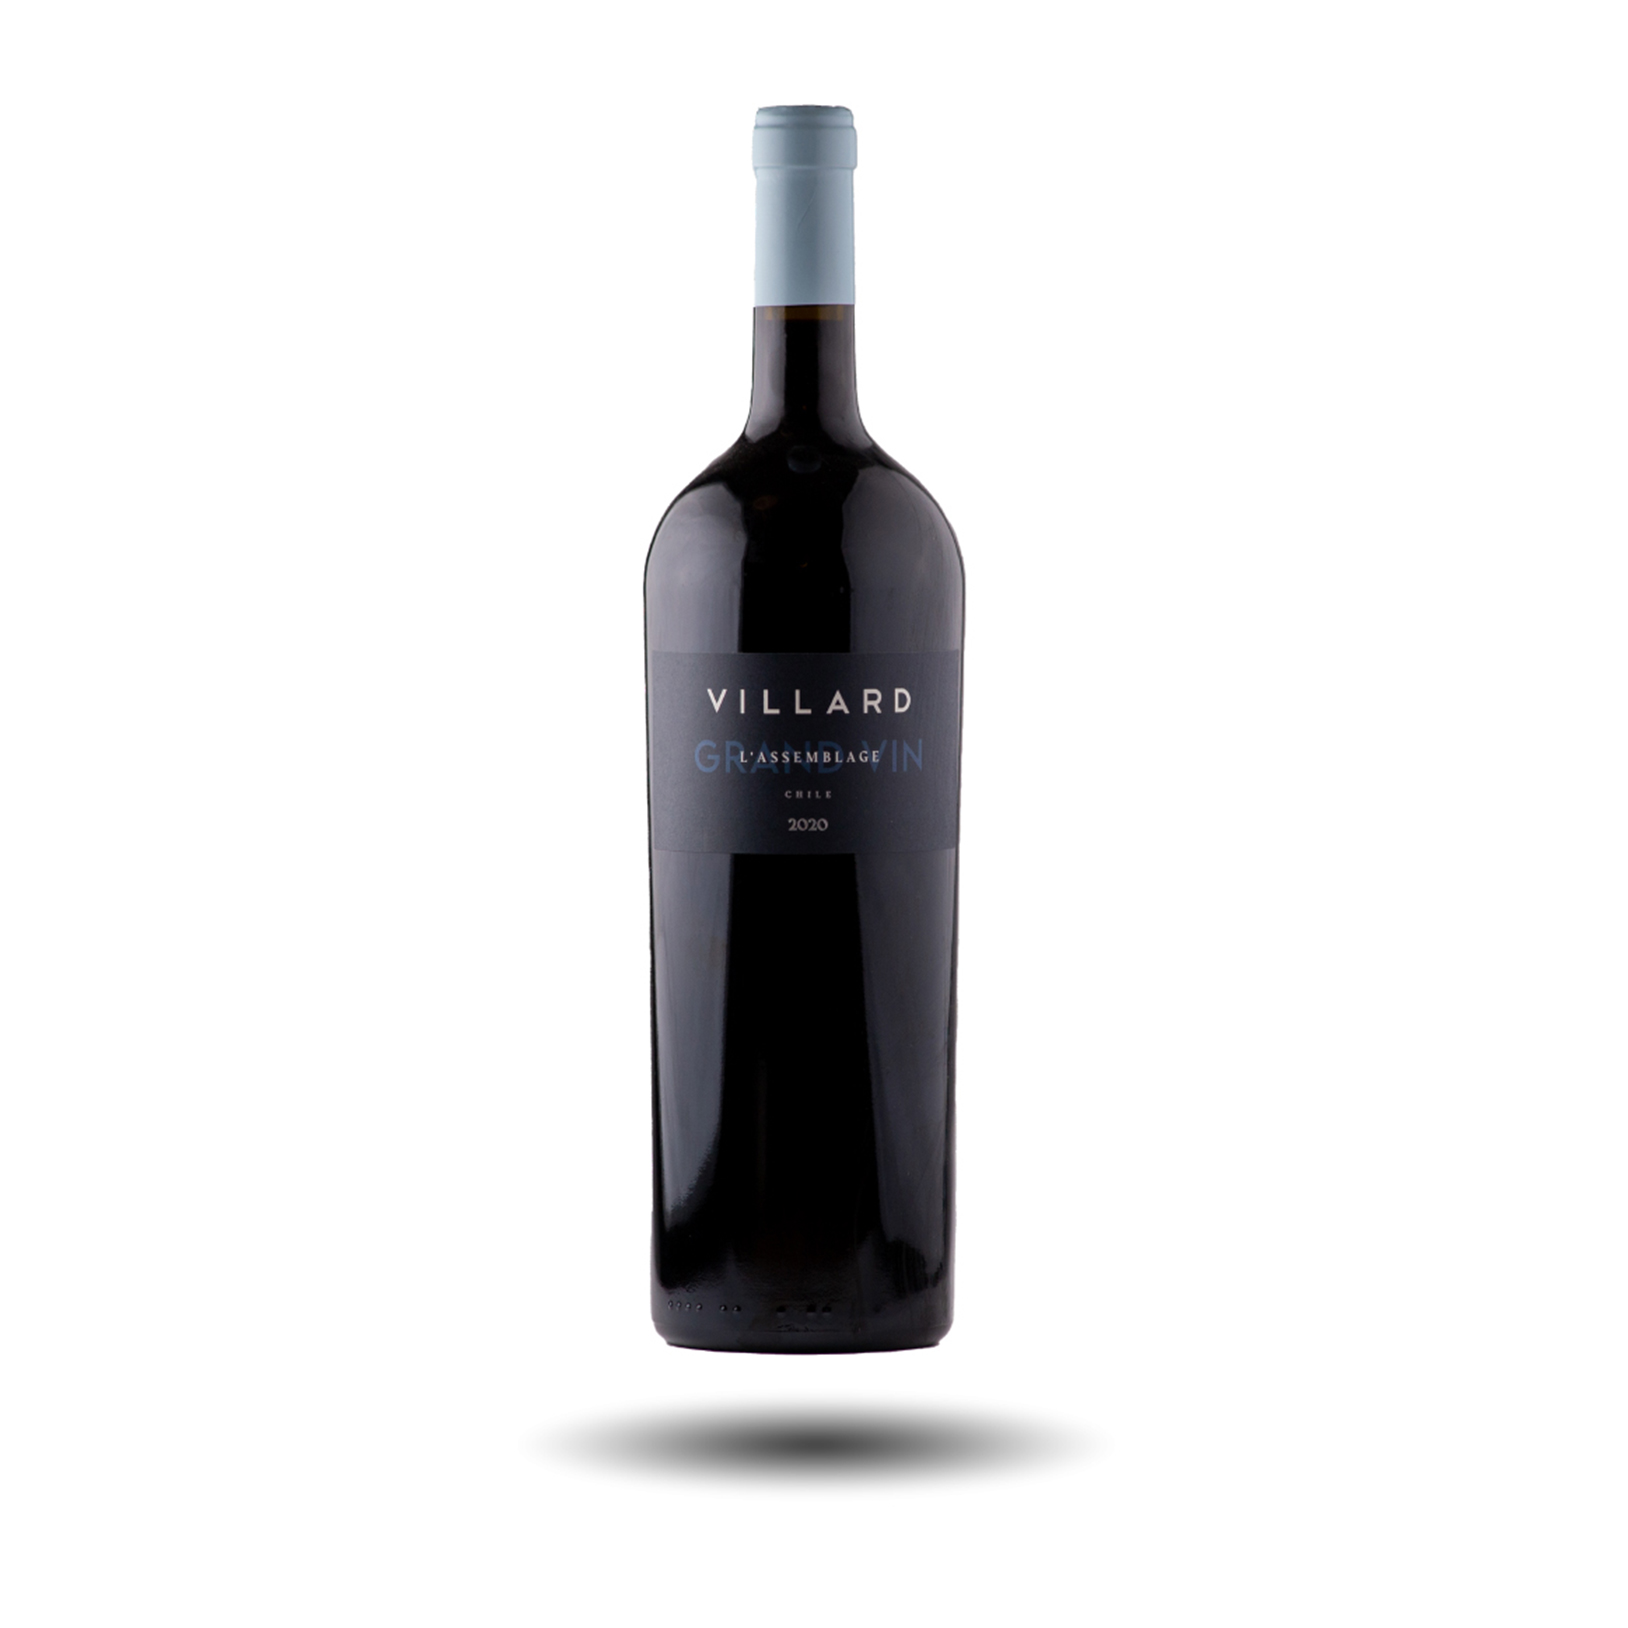 Villard - Magnum, L'Assemblage Grand Vin, 2020